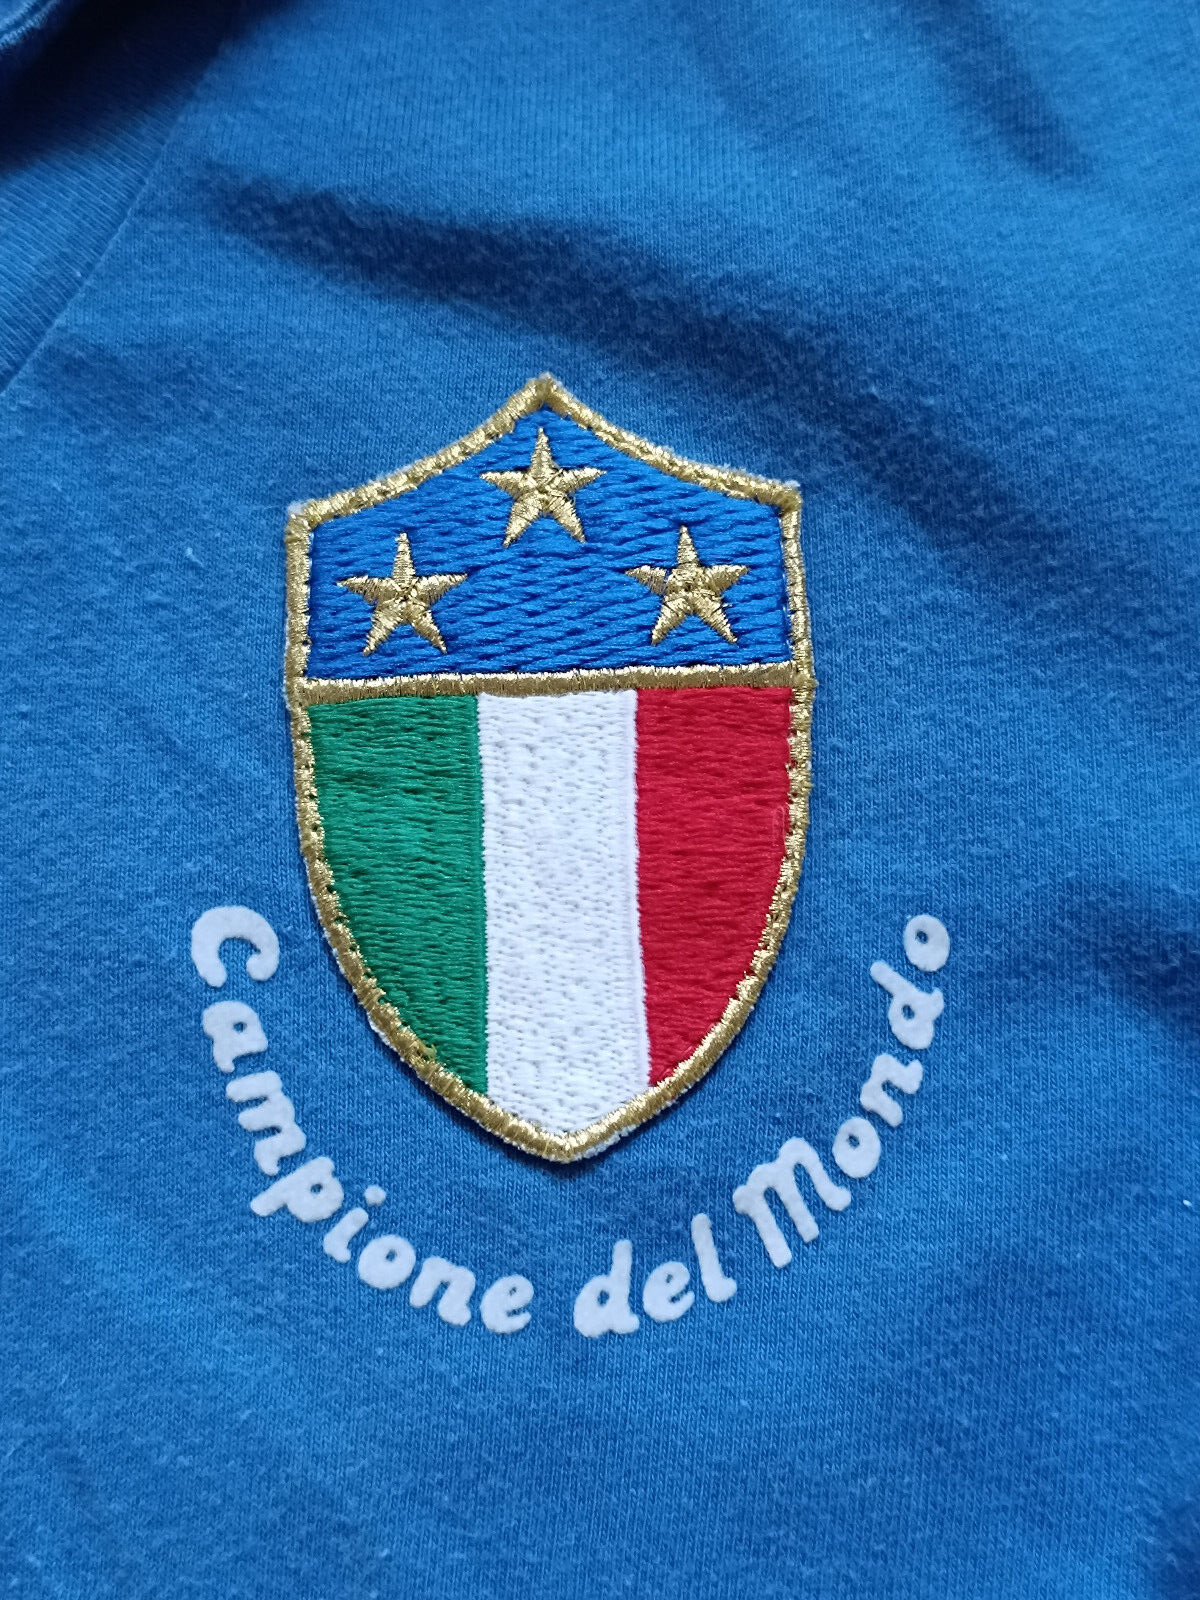 maglia calcio vintage Italia 1982 Le coq Sportif Originale Celebrativa 3 Mundial